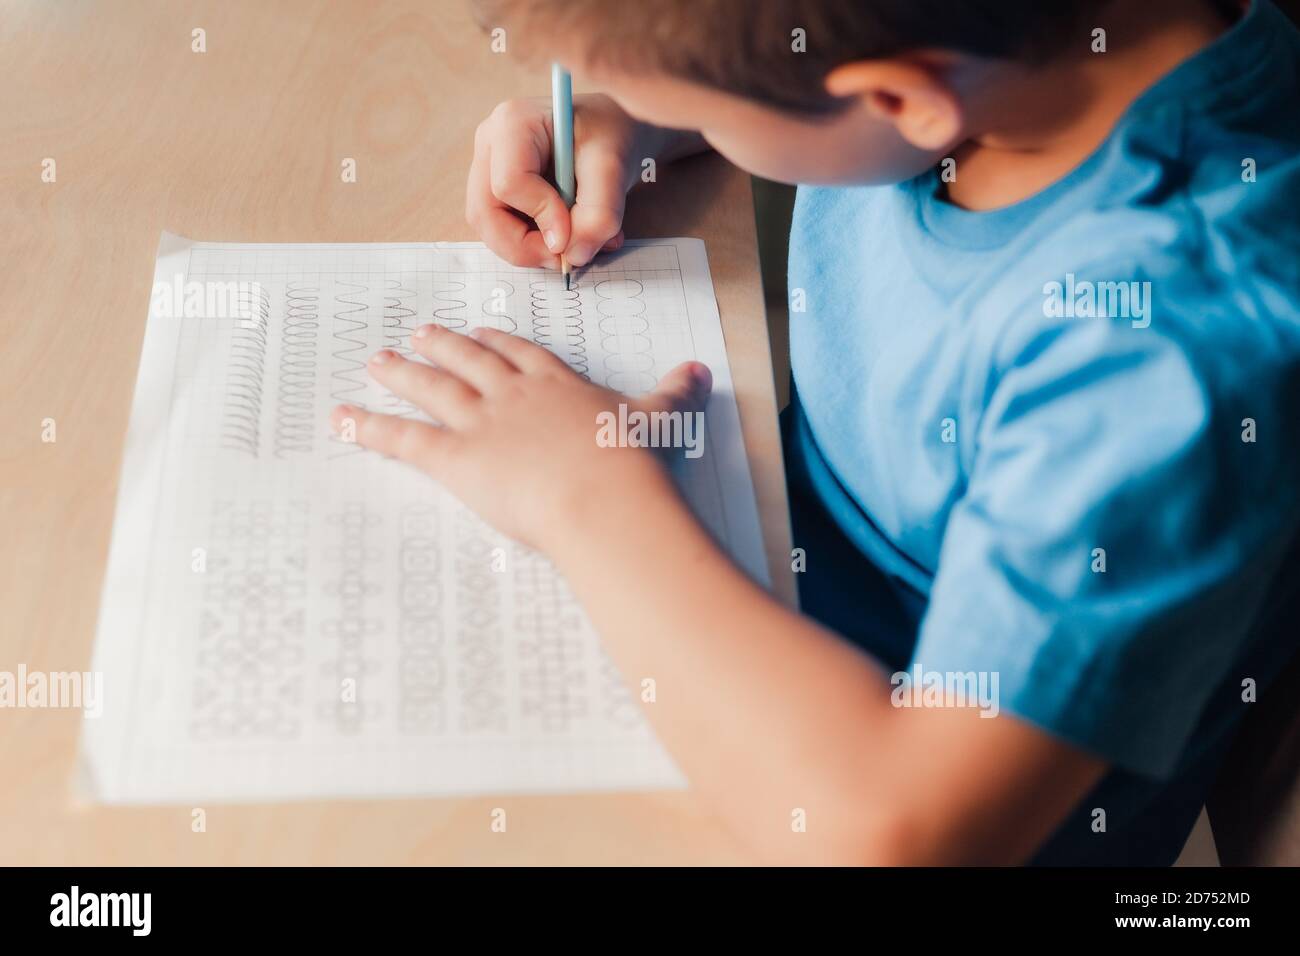 Nahaufnahme von niedlichen Kind tun seine Hausaufgaben. Kind verschiedene Linien mit Bleistift schreiben. Konzept der Kindererziehung. Stockfoto